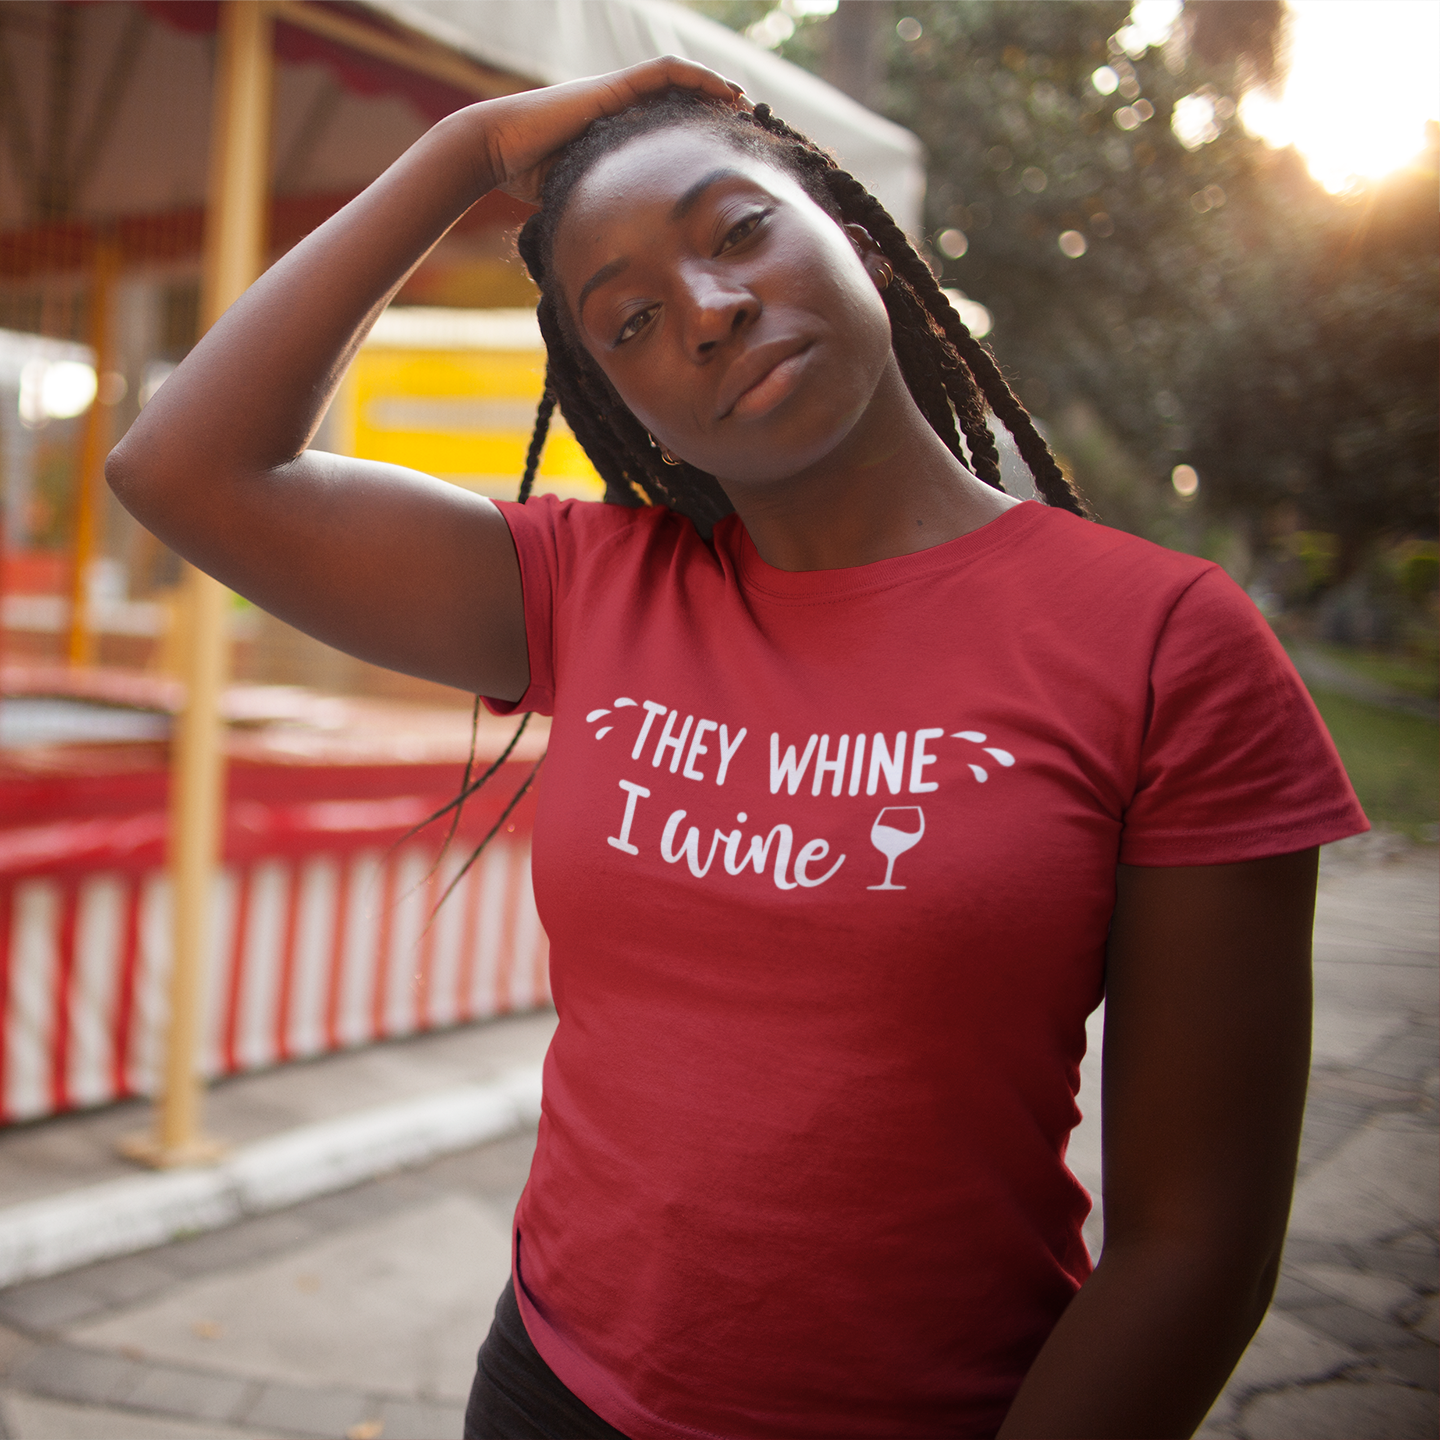 'They whine - I wine' volwassene shirt